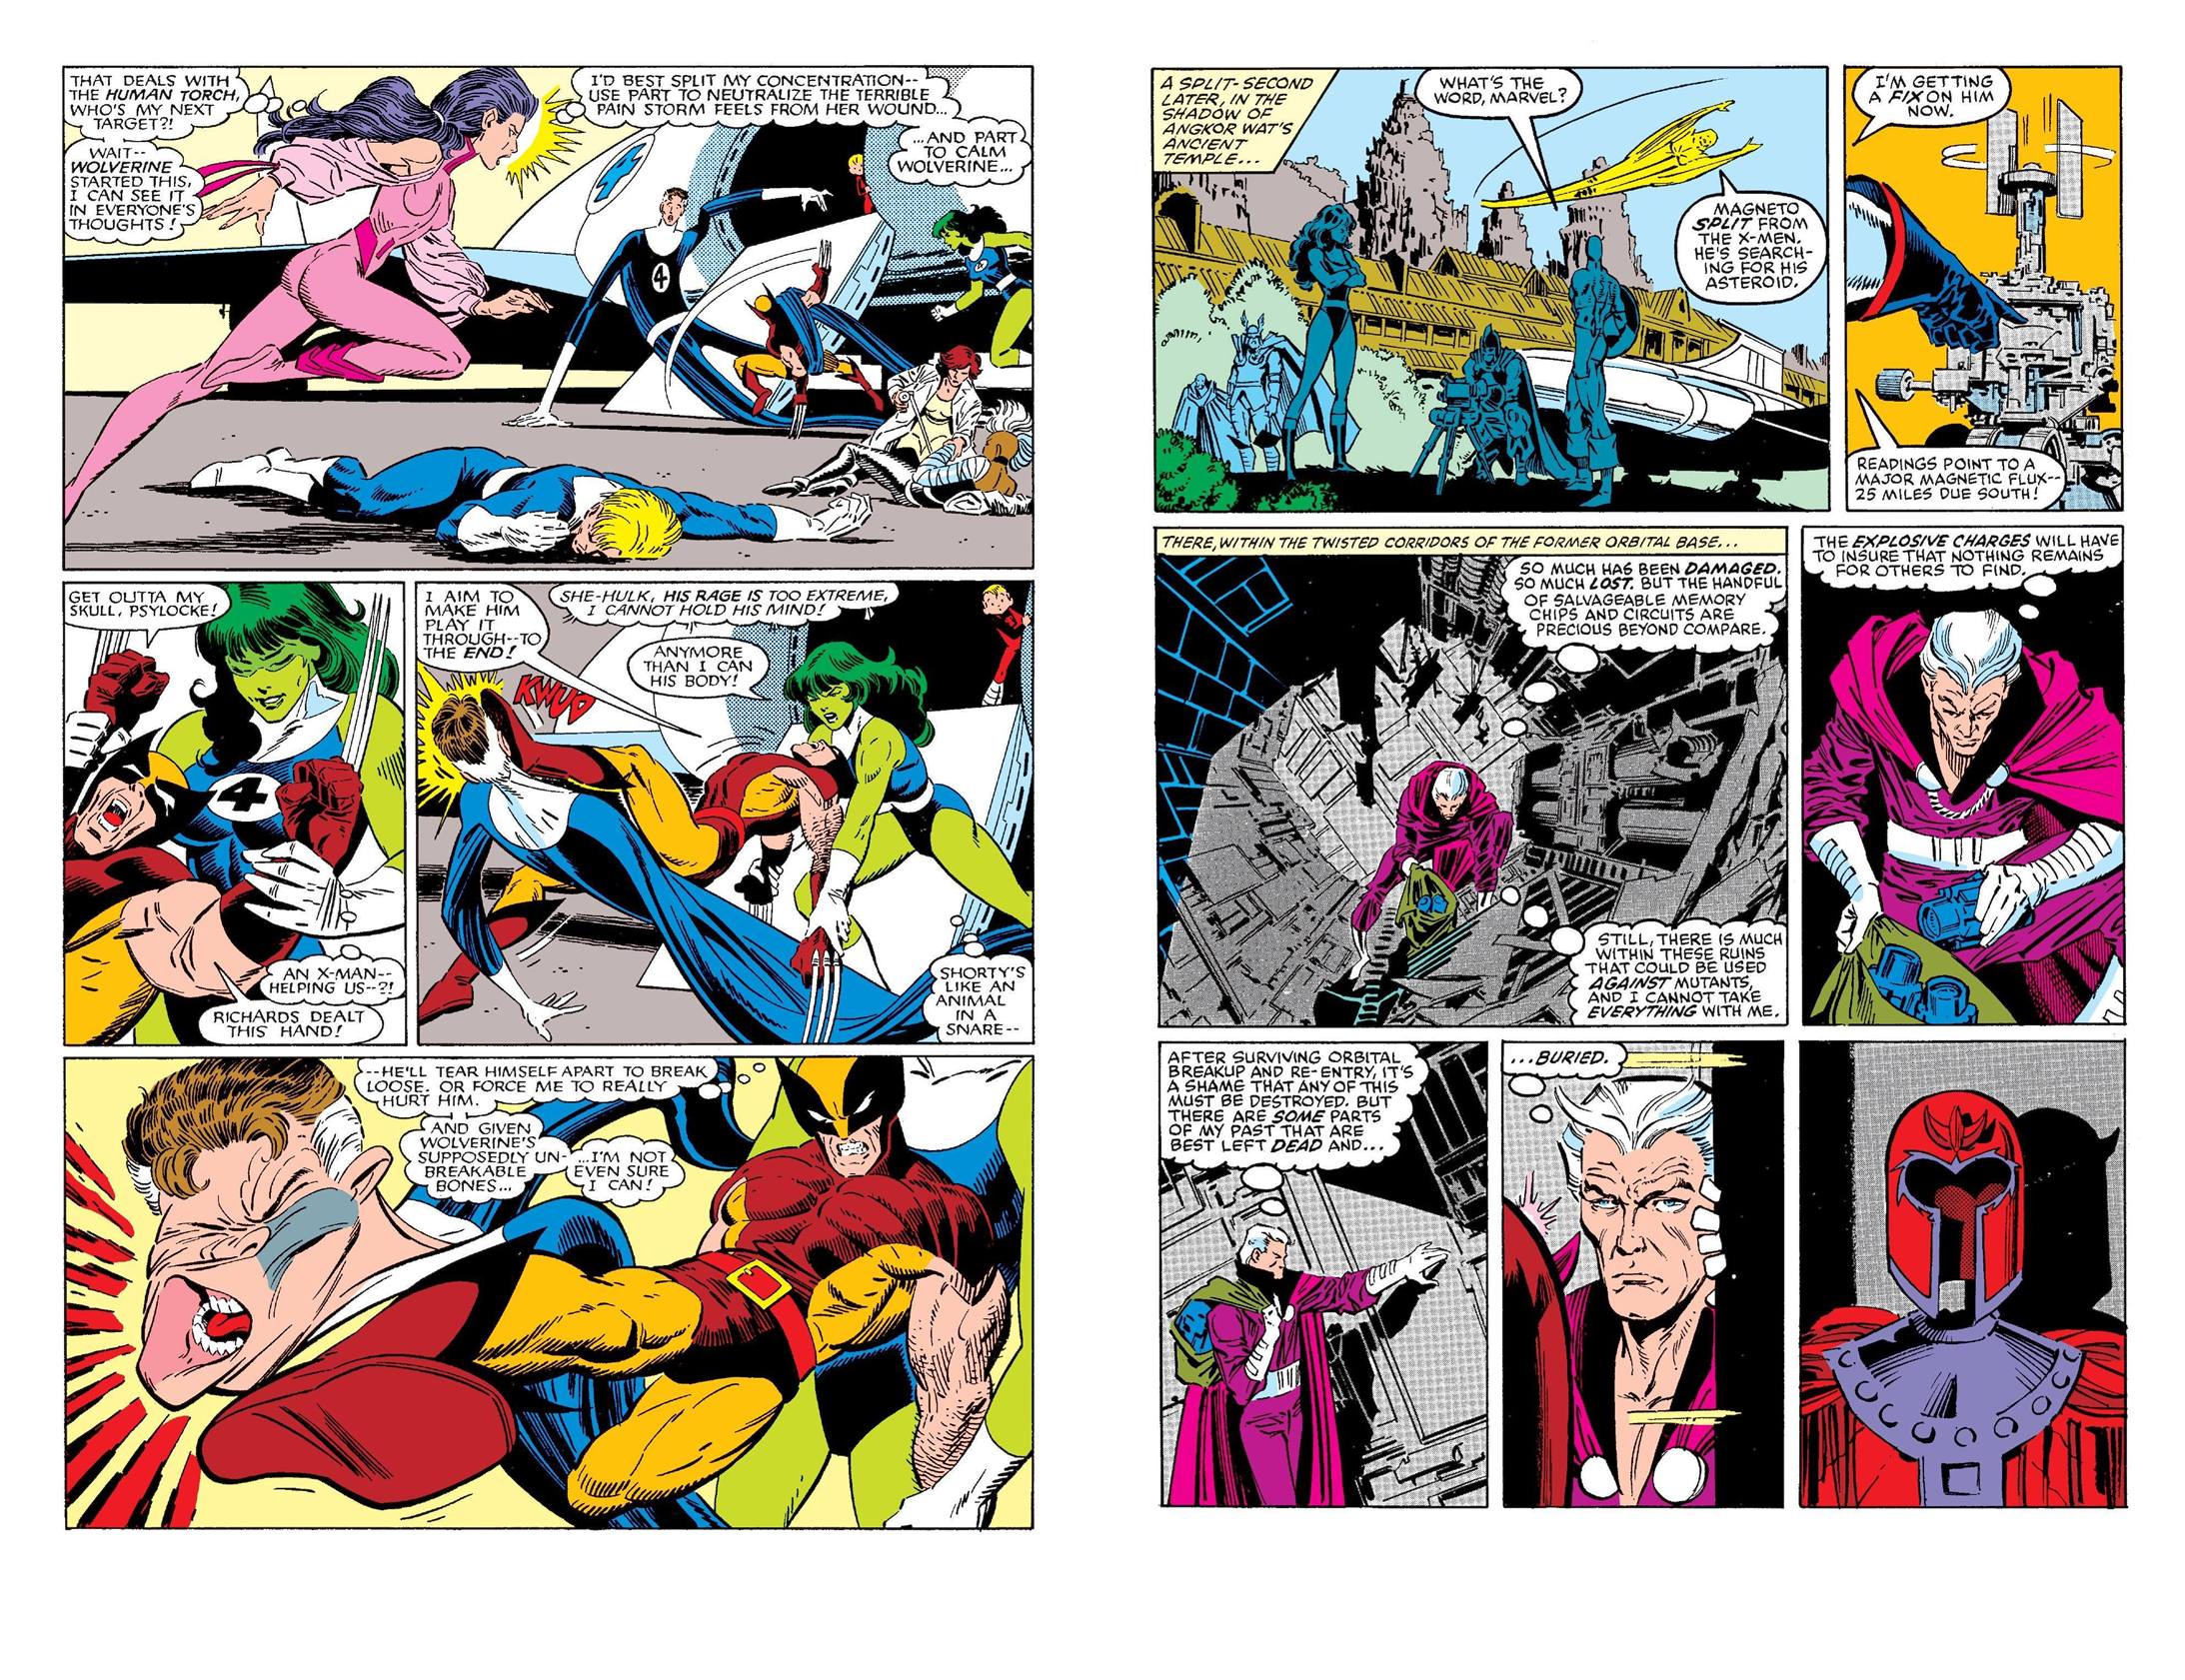 X-Men vs Avengers/Fantastic Four review